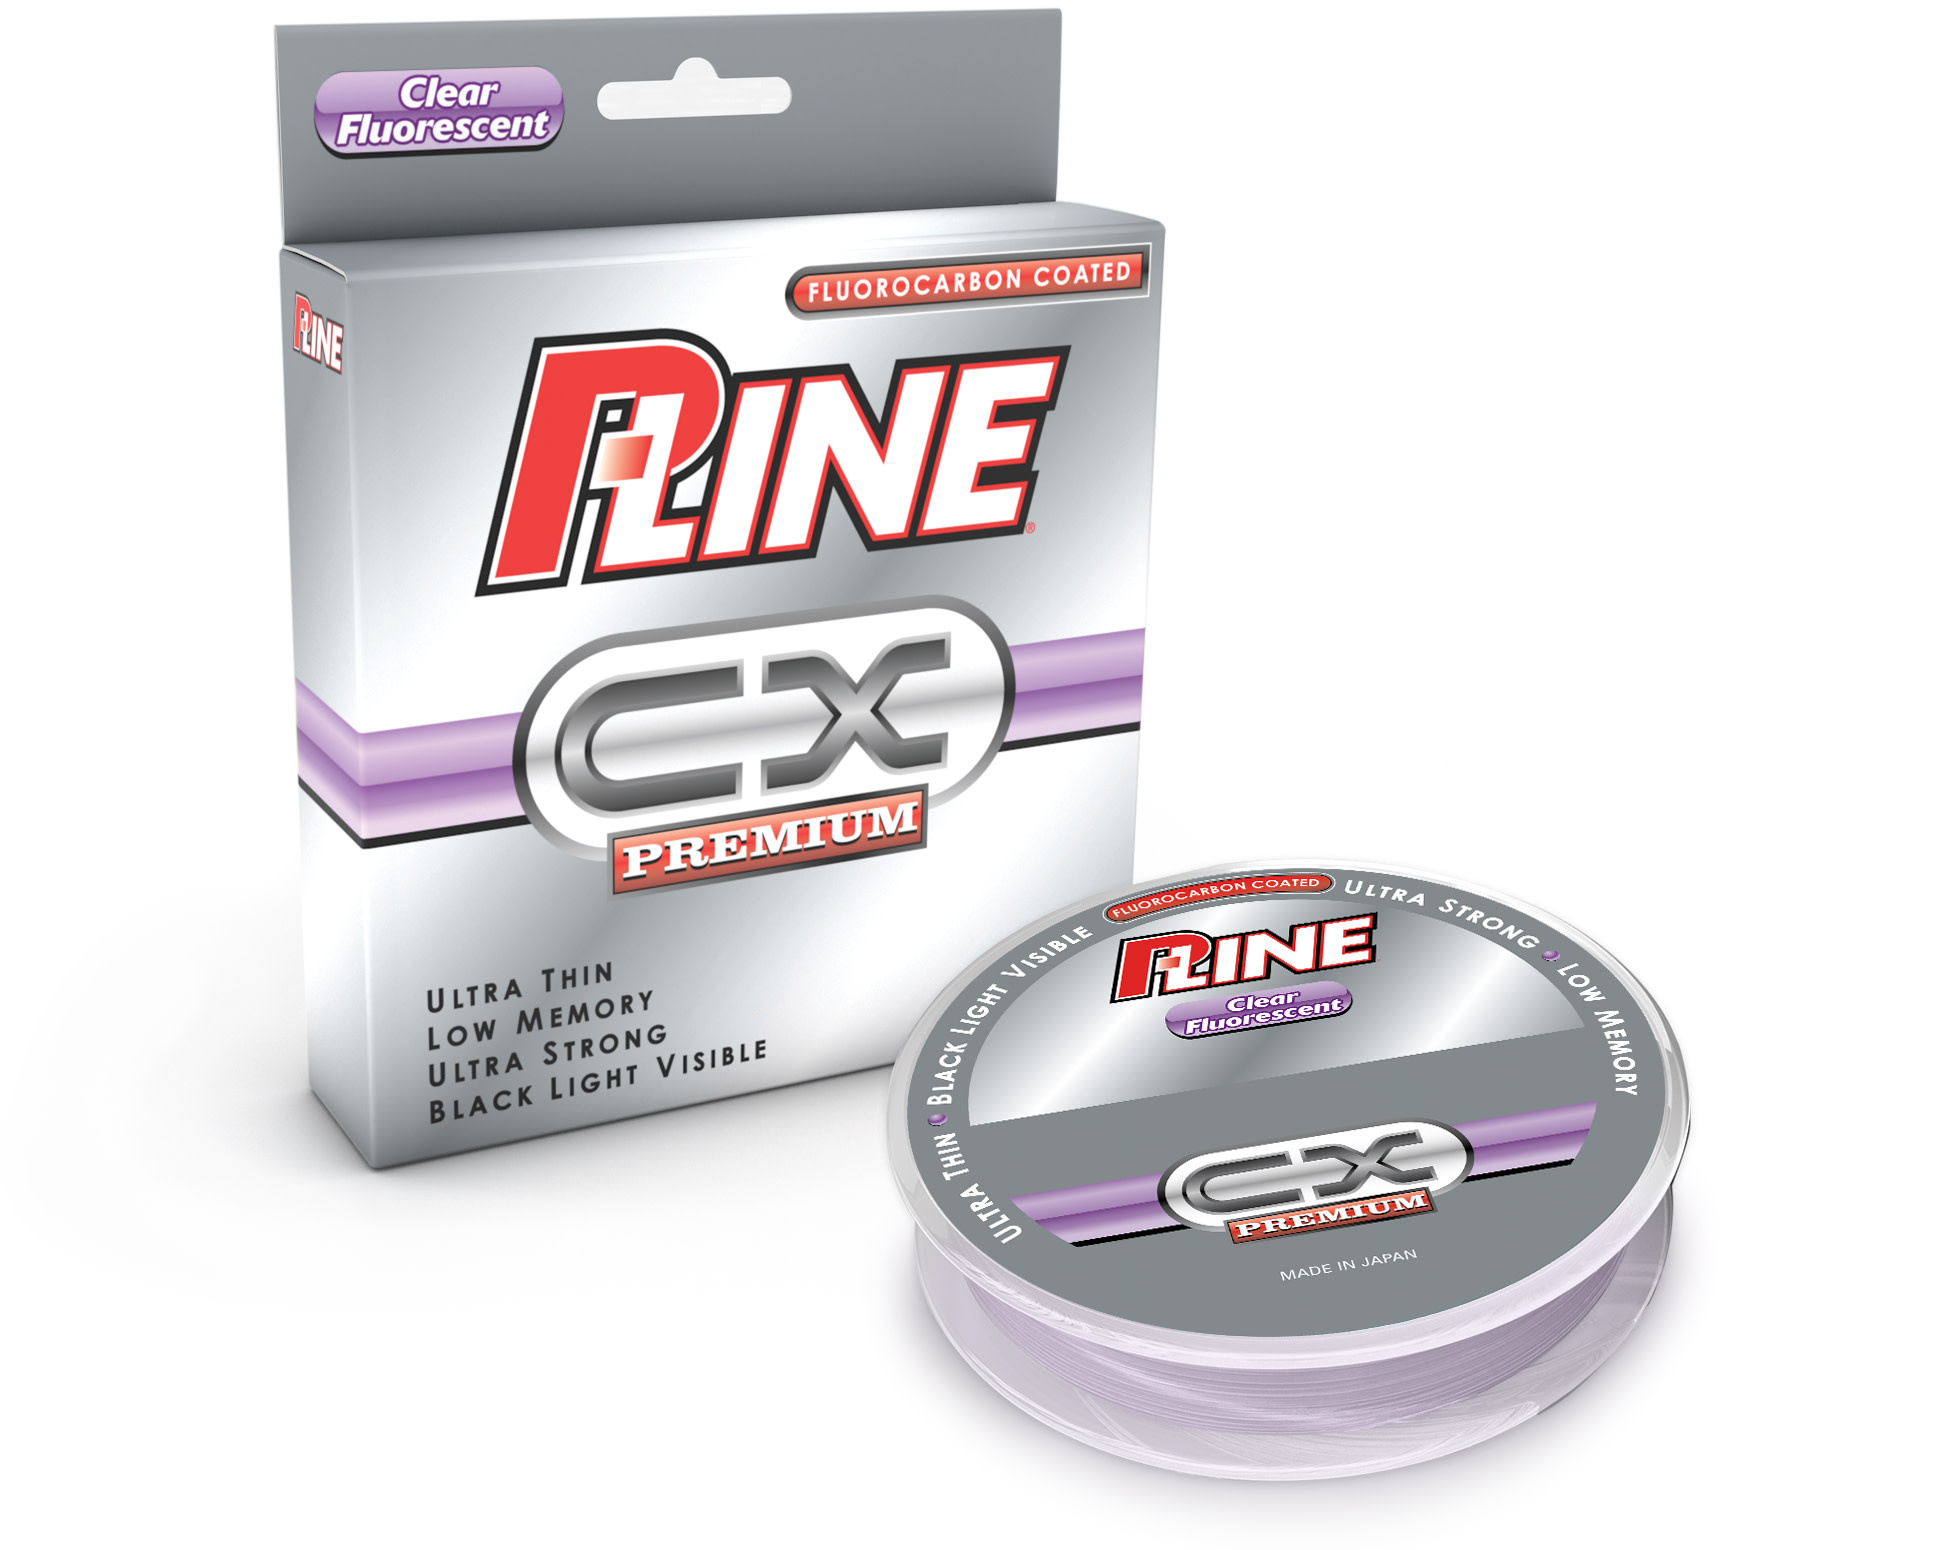 P-Line CX Premium Clear Fluorescent 6lb 300yds Reg. $16.99 - Gagnon  Sporting Goods